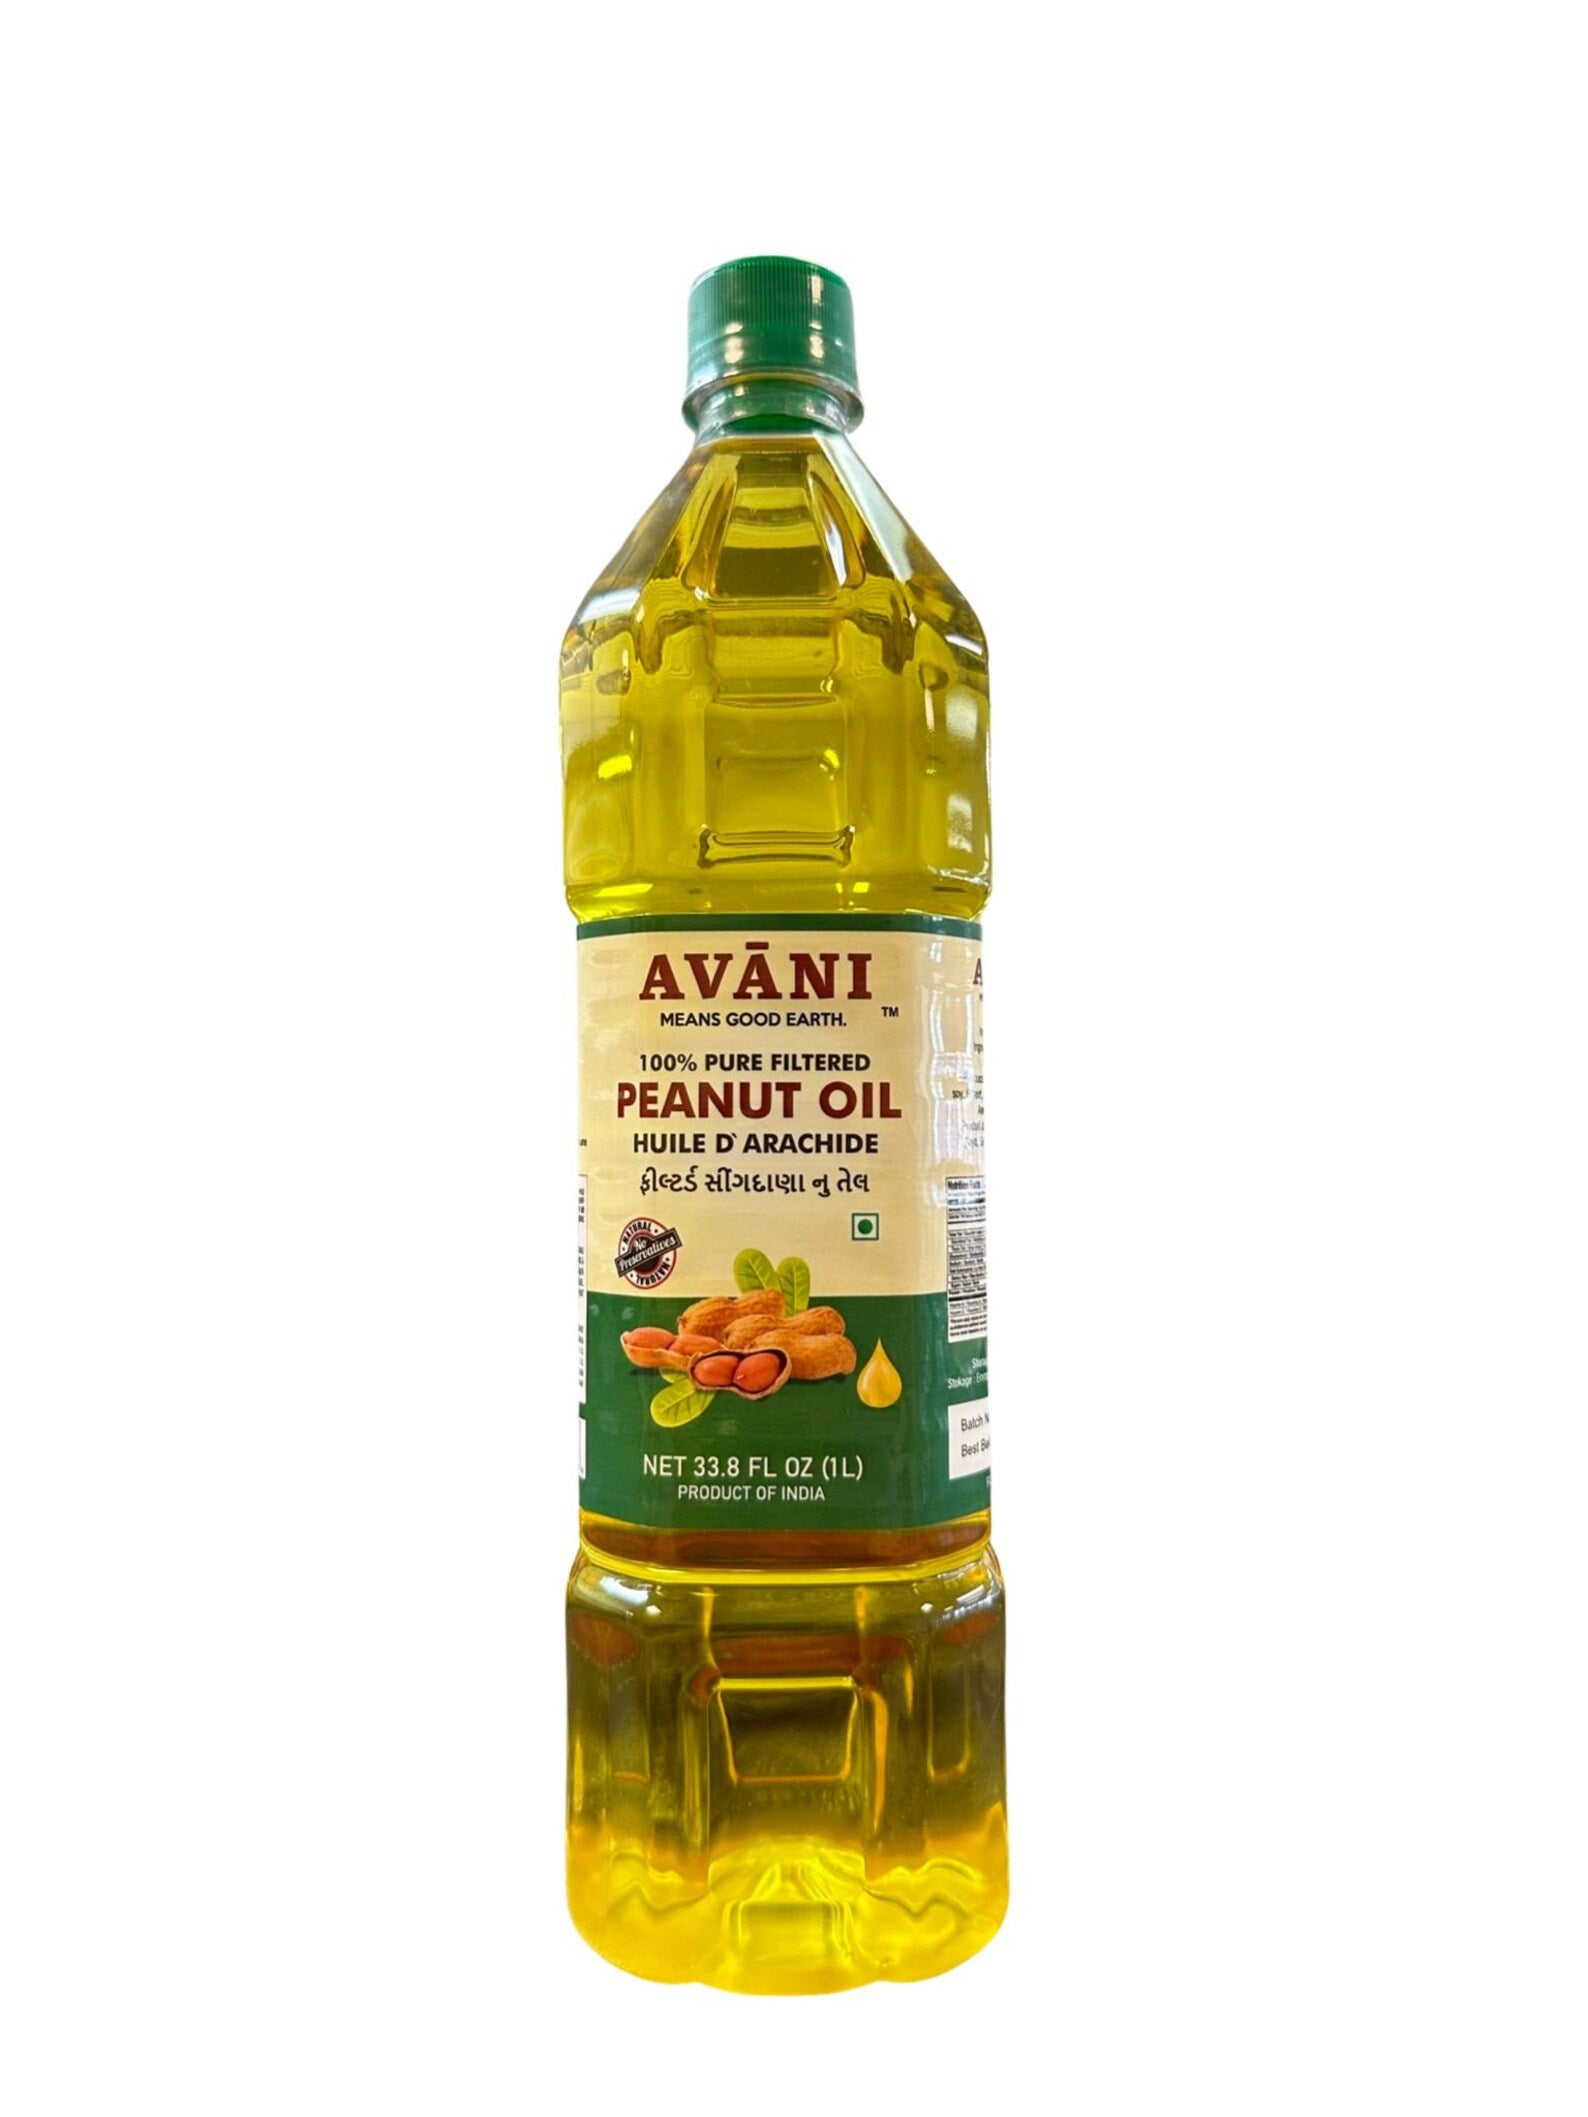 Avani Peanut Nut (Groundnut) Oil, 1 litre